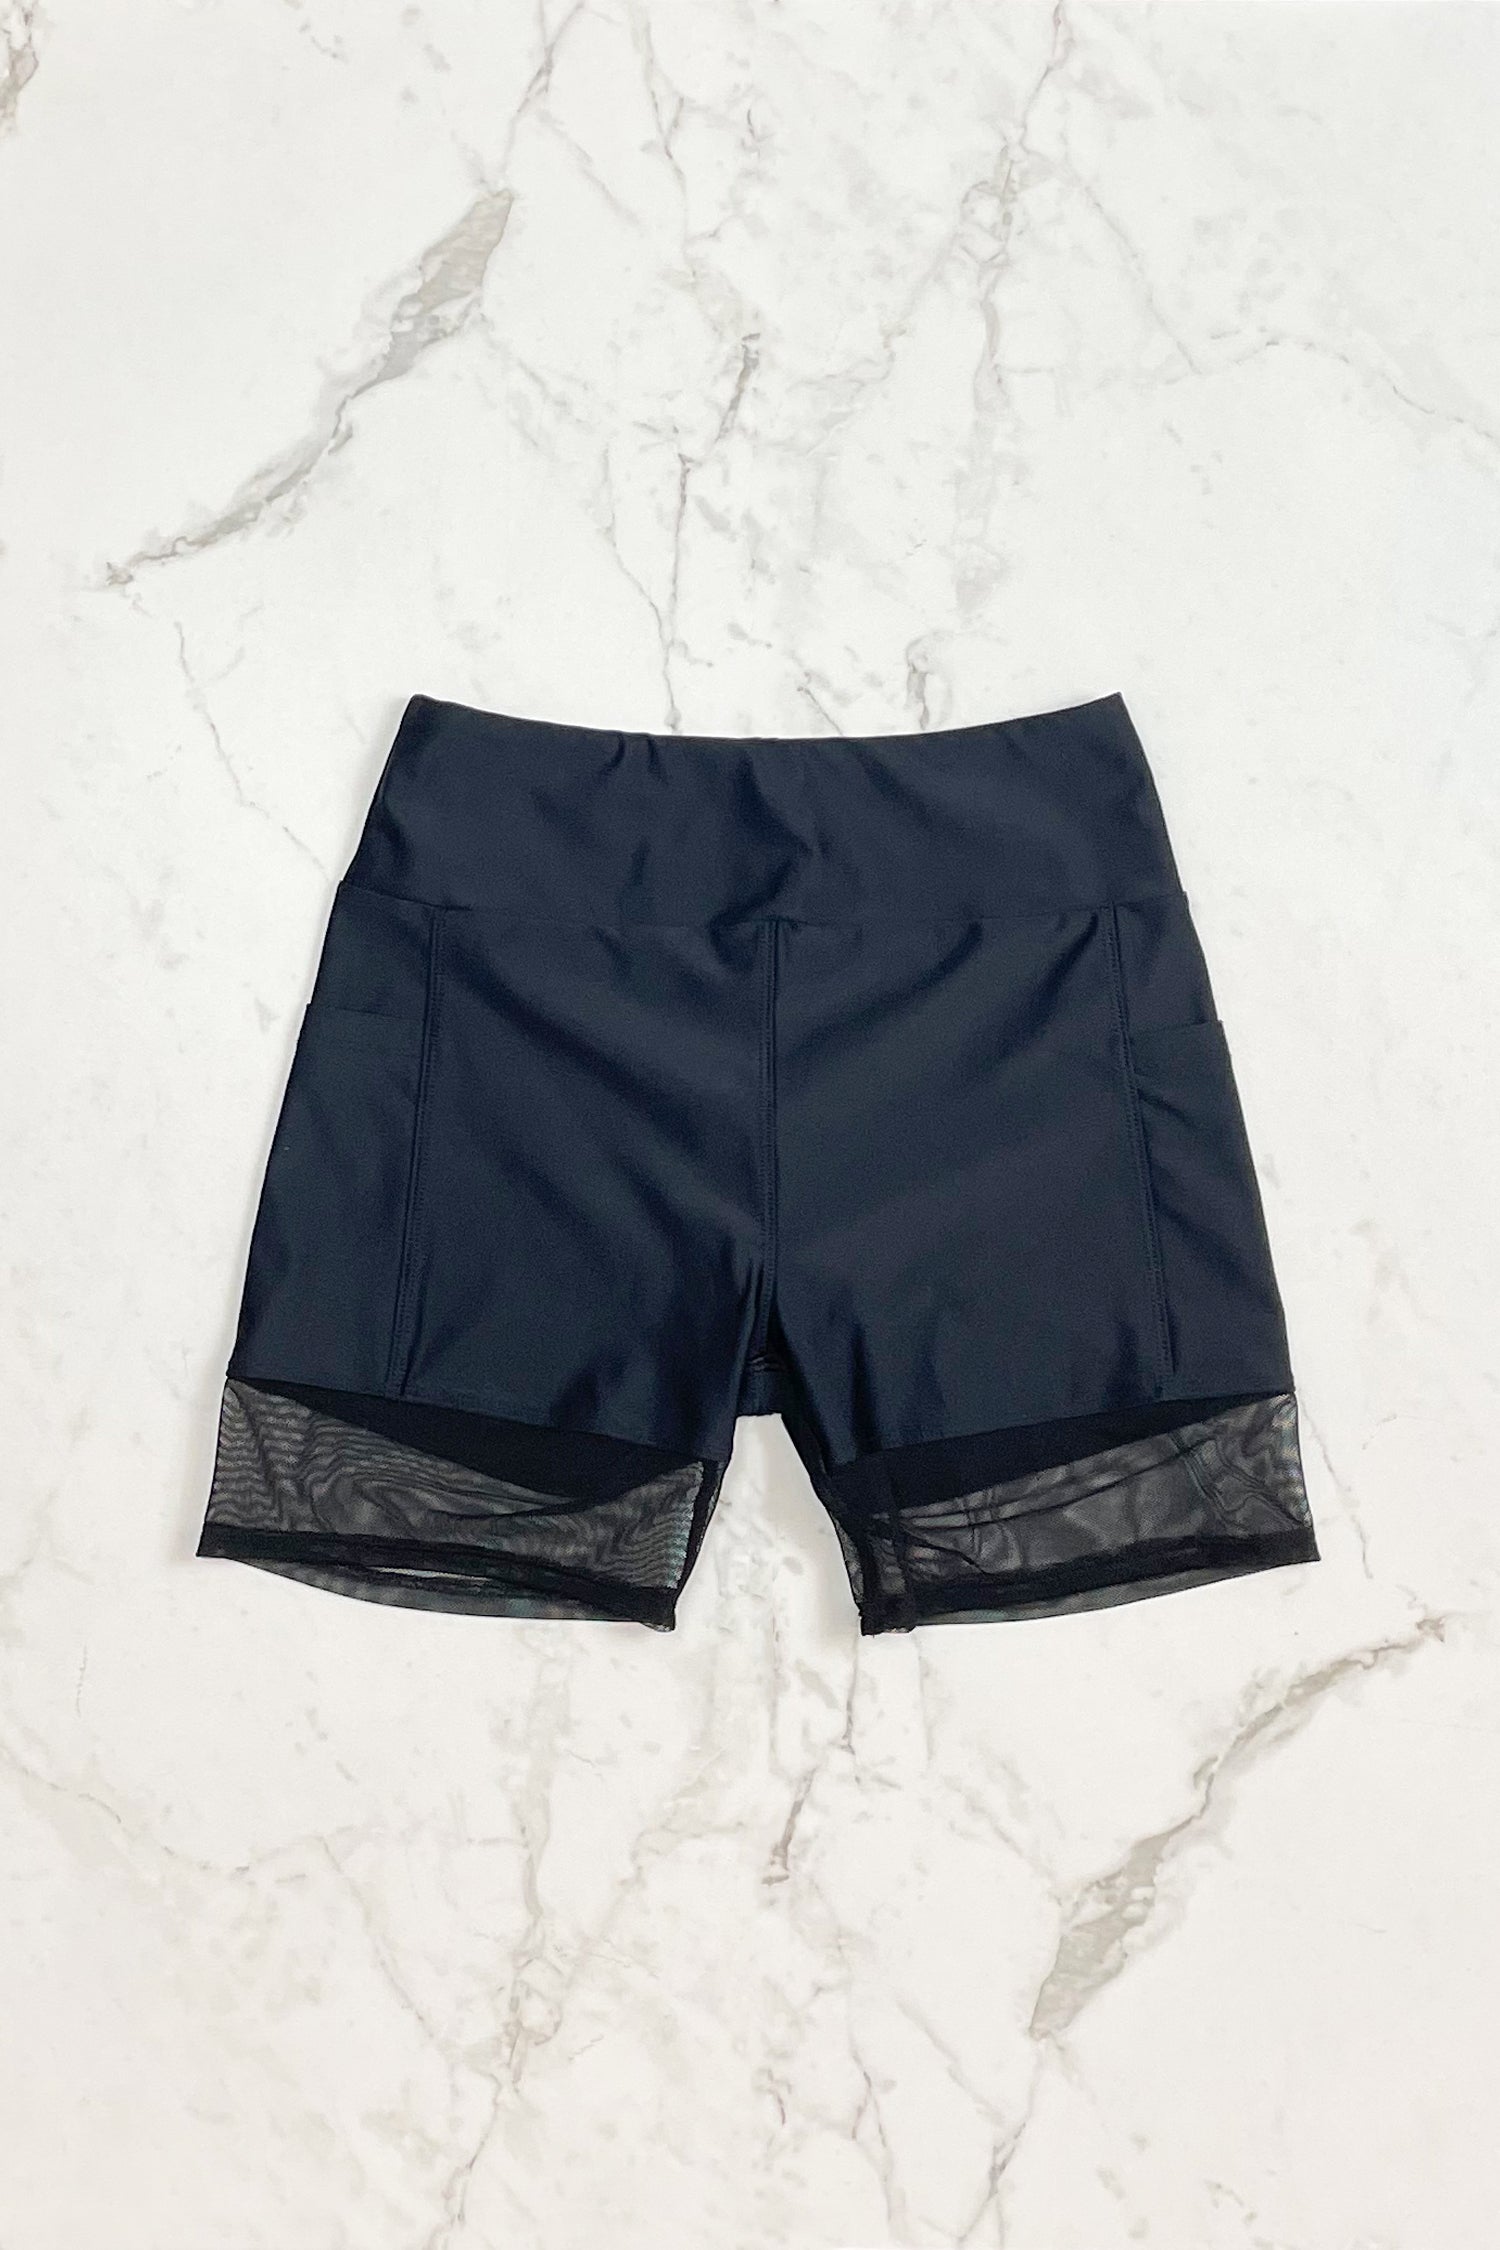 MARINA – Bikini top in Black and mesh – Selfish swimwear